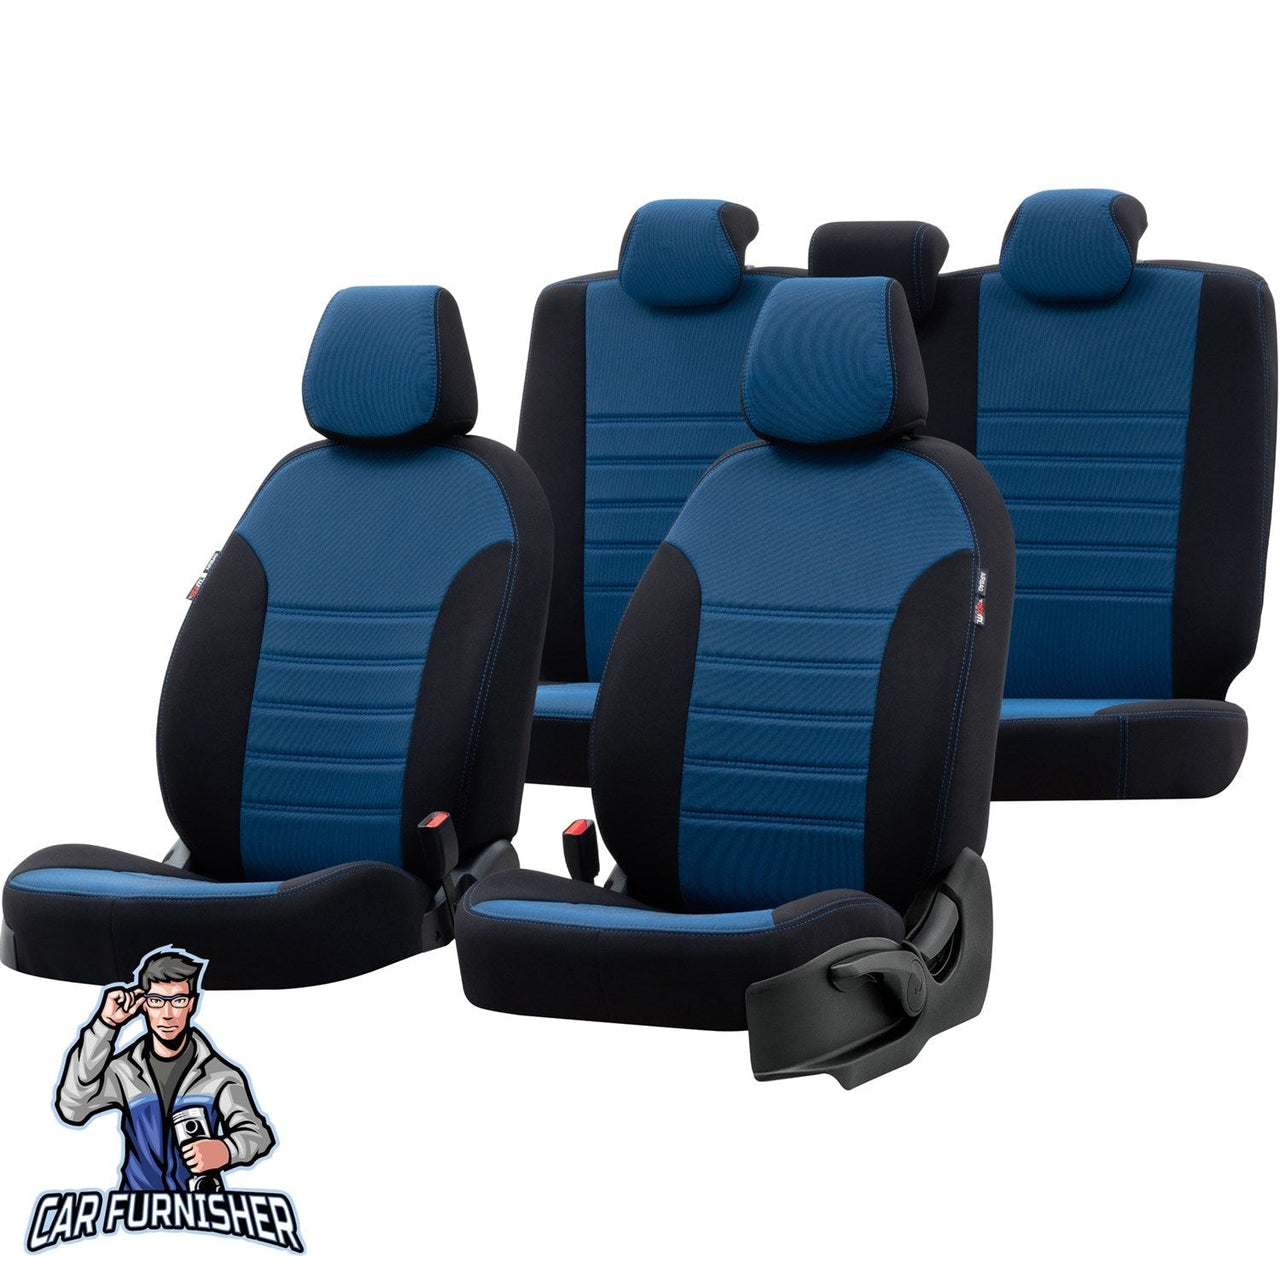 Chevrolet Spark Seat Covers Original Jacquard Design Blue Jacquard Fabric